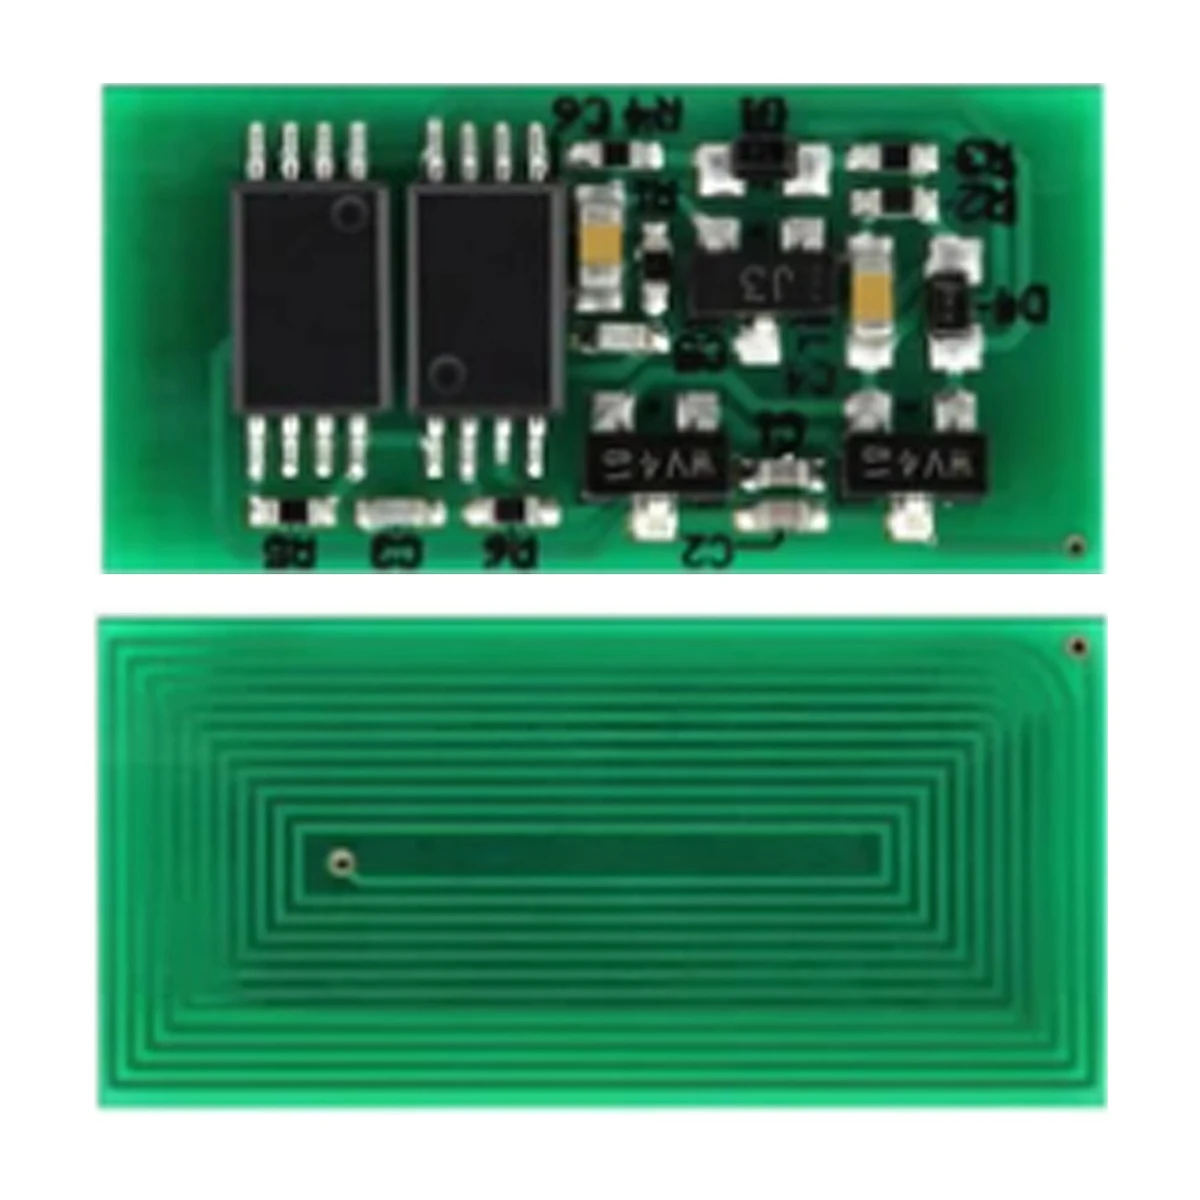 

20PCS X Chips for Ricoh MP C2030 C2530 C2050 C2550 C2010 MPC2030 MPC2530 MPC2050 MPC2550 MPC2010 Toner Cartridge Chip